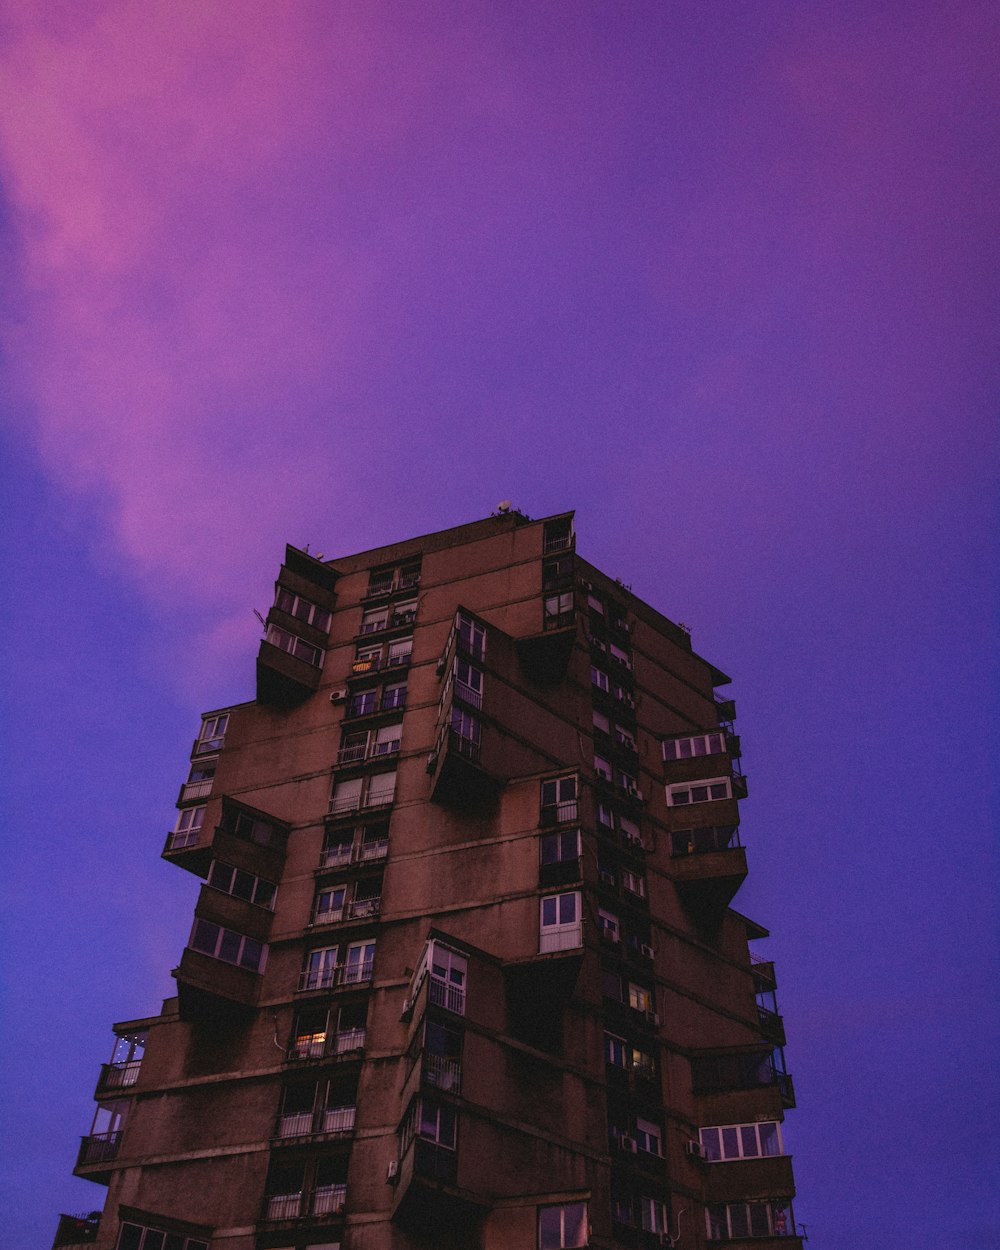 brown concrete building under purple sky